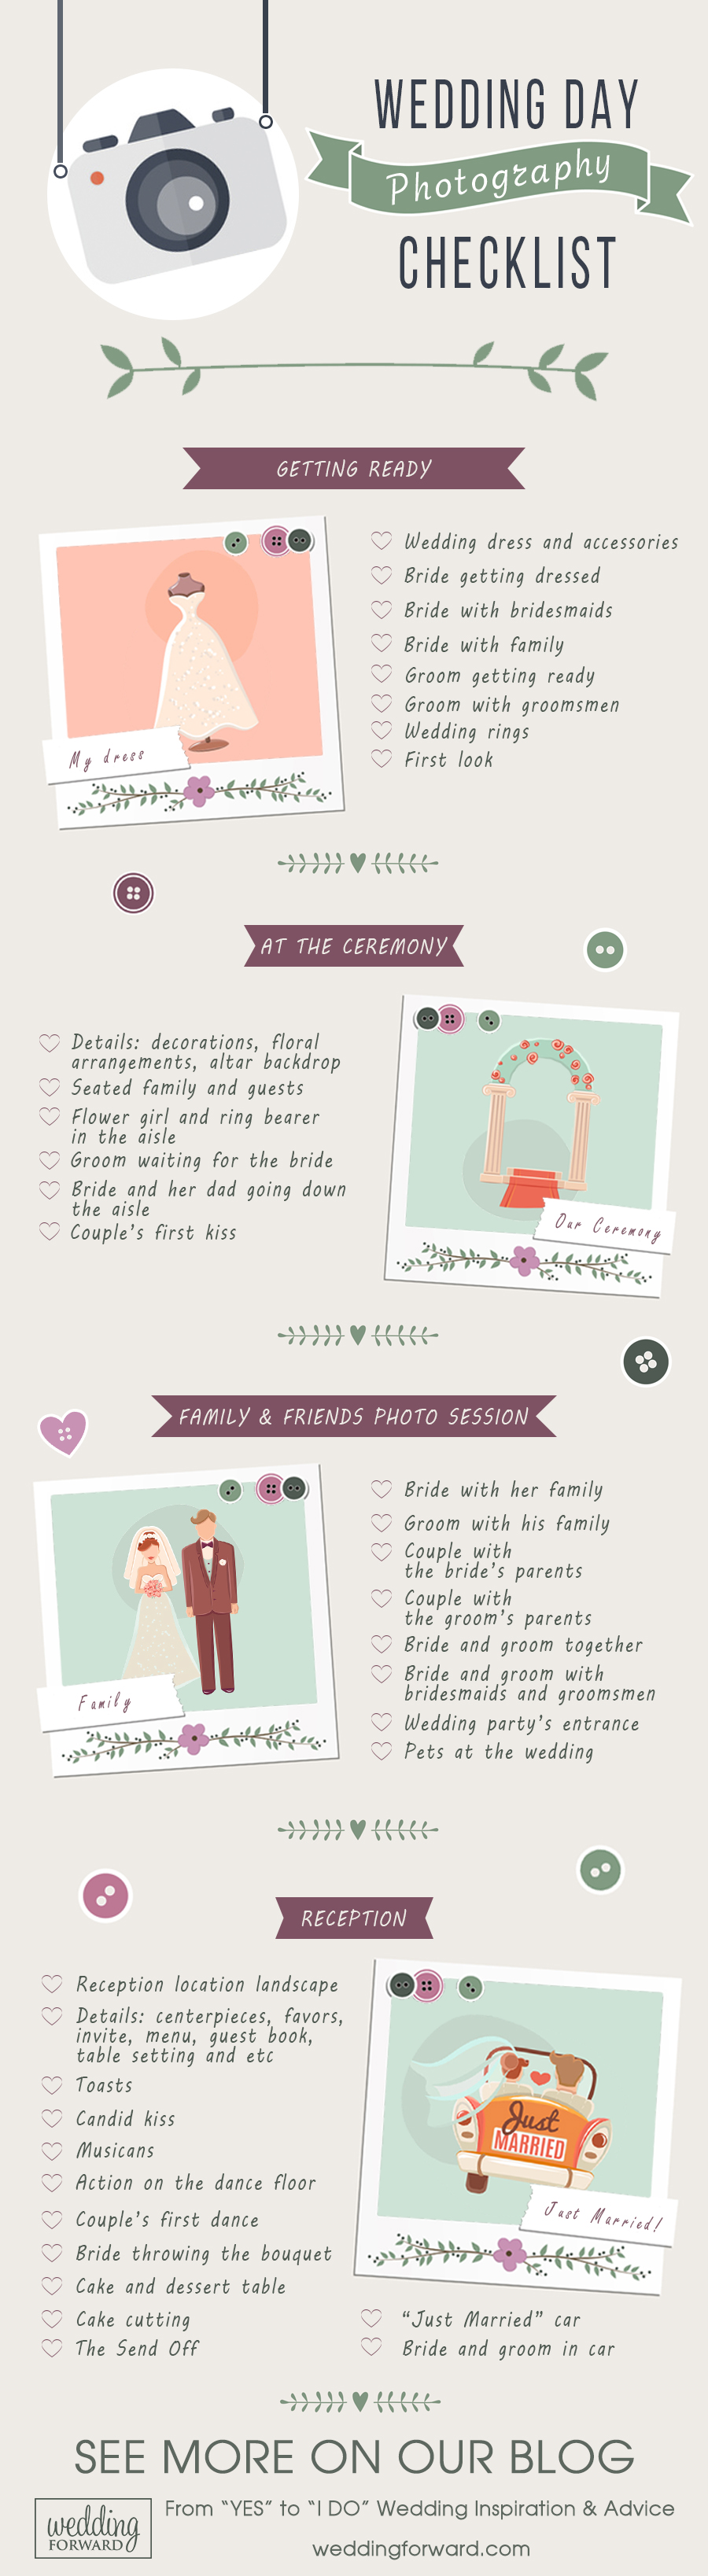 Wedding Day Photo Checklist